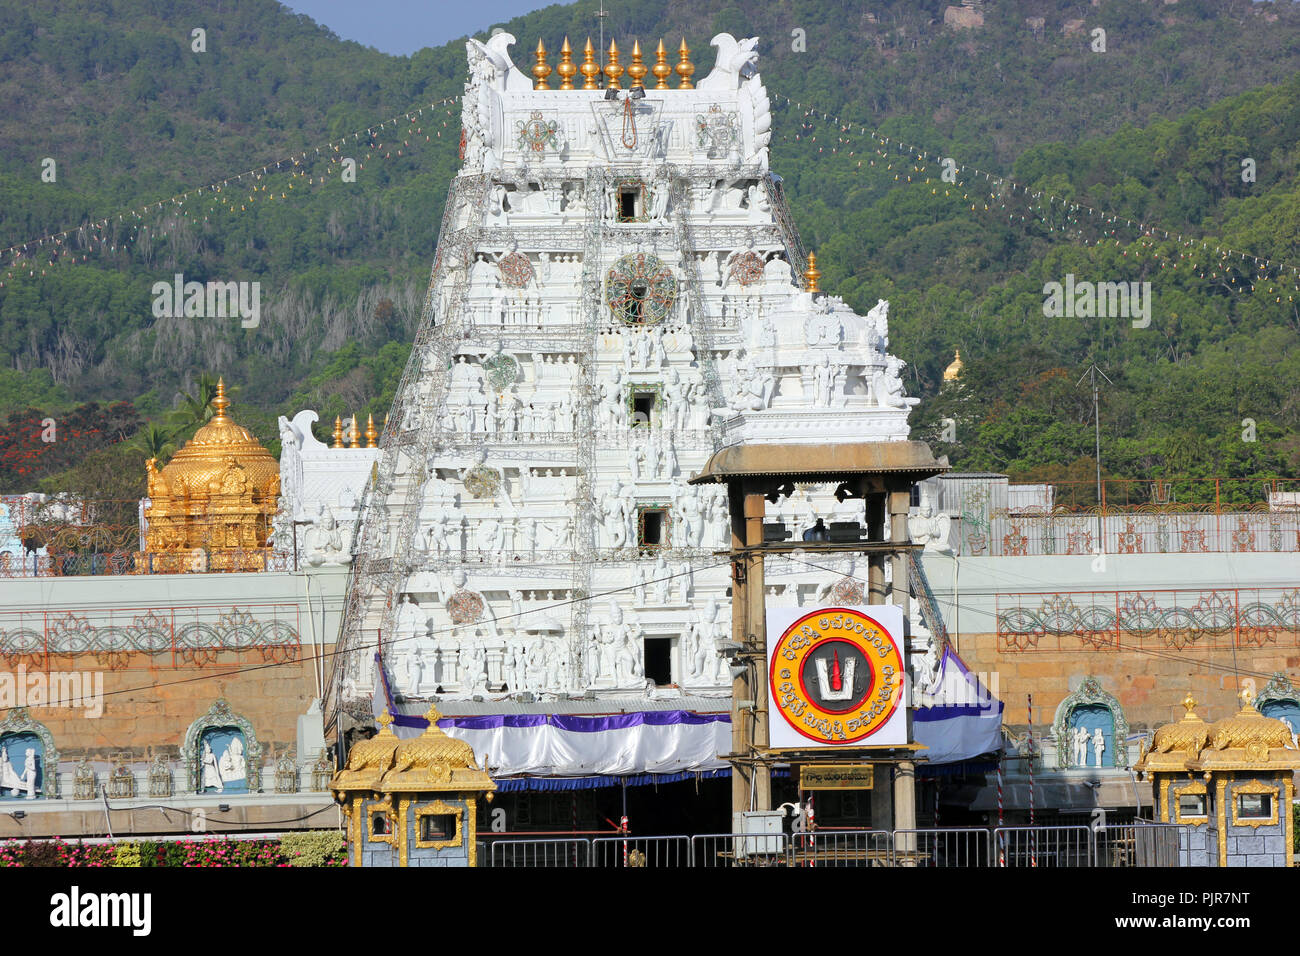 Famoso tempio indù dedicato al Signore Balaji, situato su sette colline di Tirumala in Andhra Pradesh, India. Cupola dorata o Vimana, visto all'indietro. Foto Stock